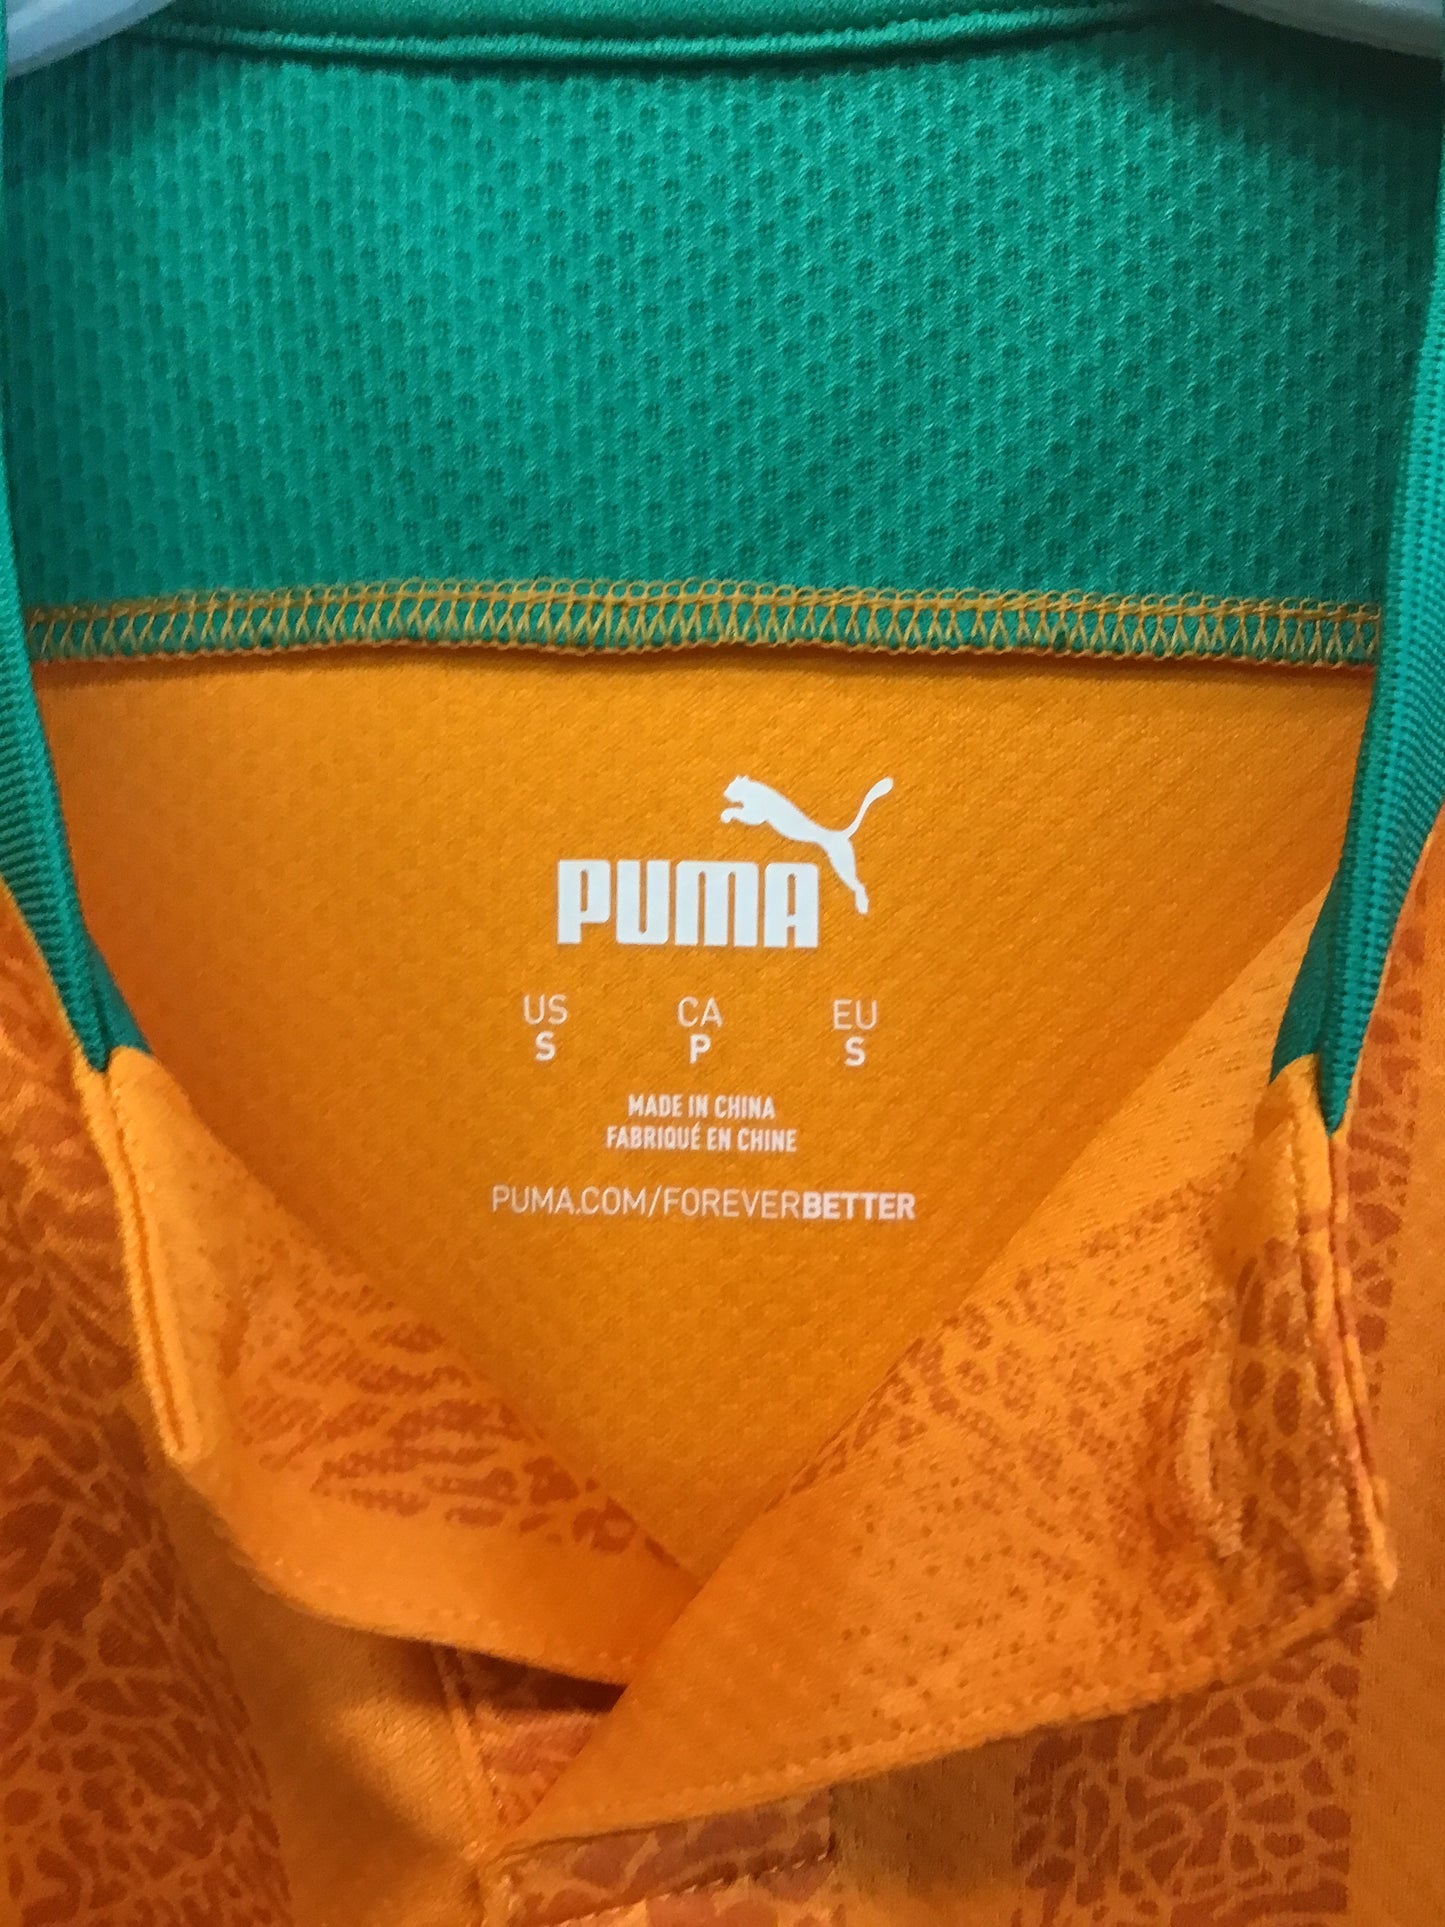 Puma Cote D’Ivoire Ivory Coast Home 2020 Jersey, Size S